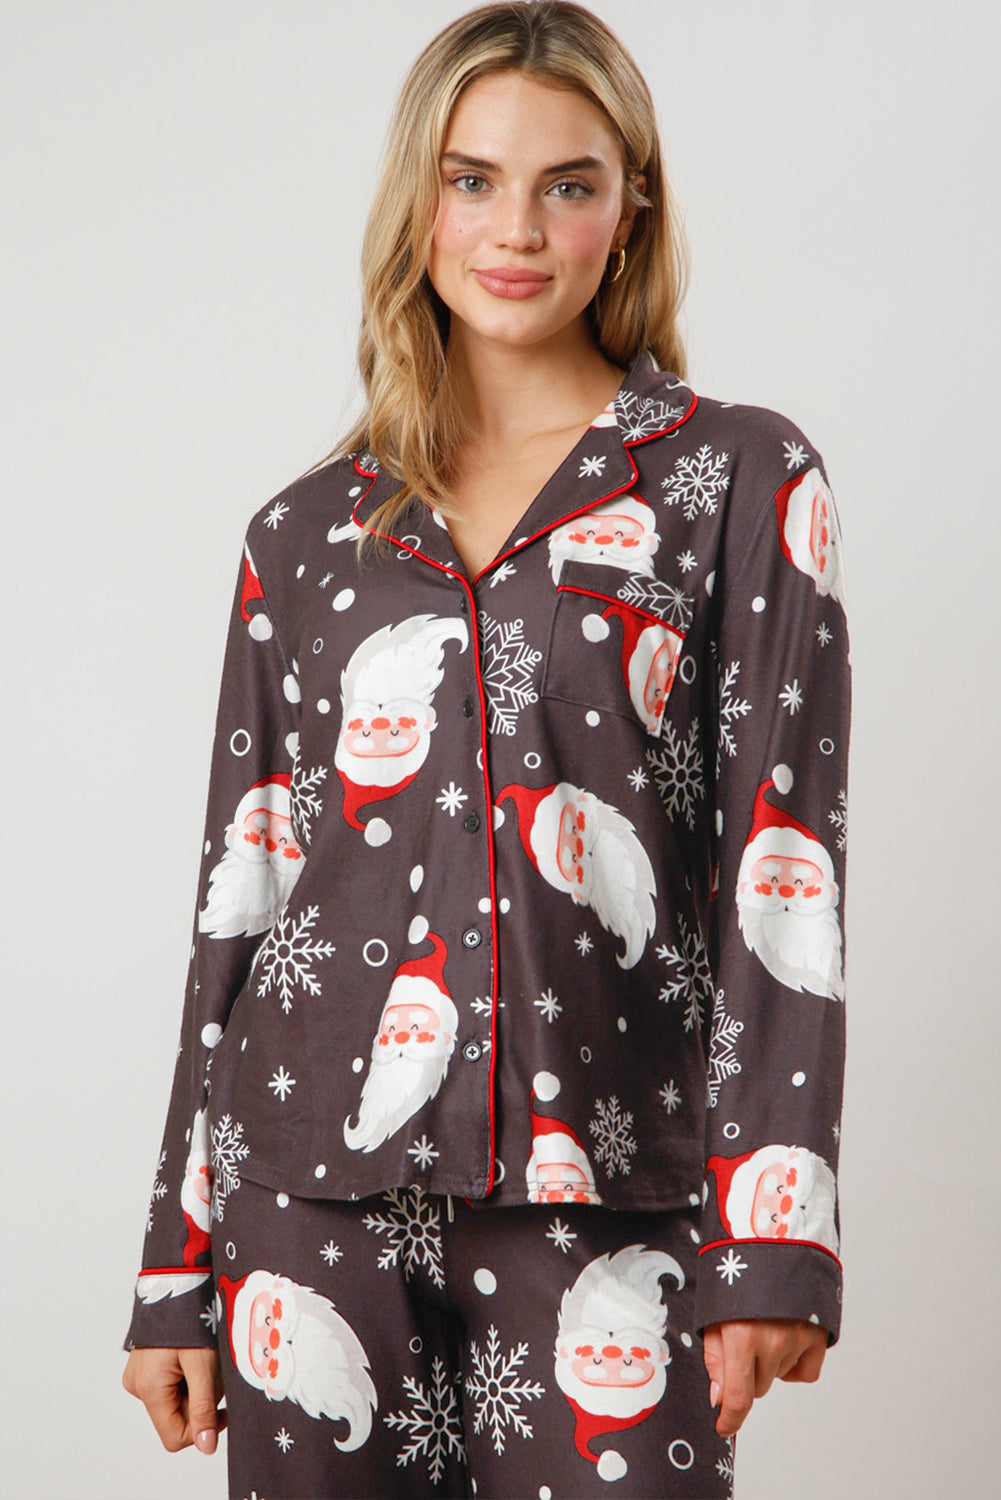 Set pigiama con camicia e pantaloni con stampa natalizia bianca stampata di Babbo Natale